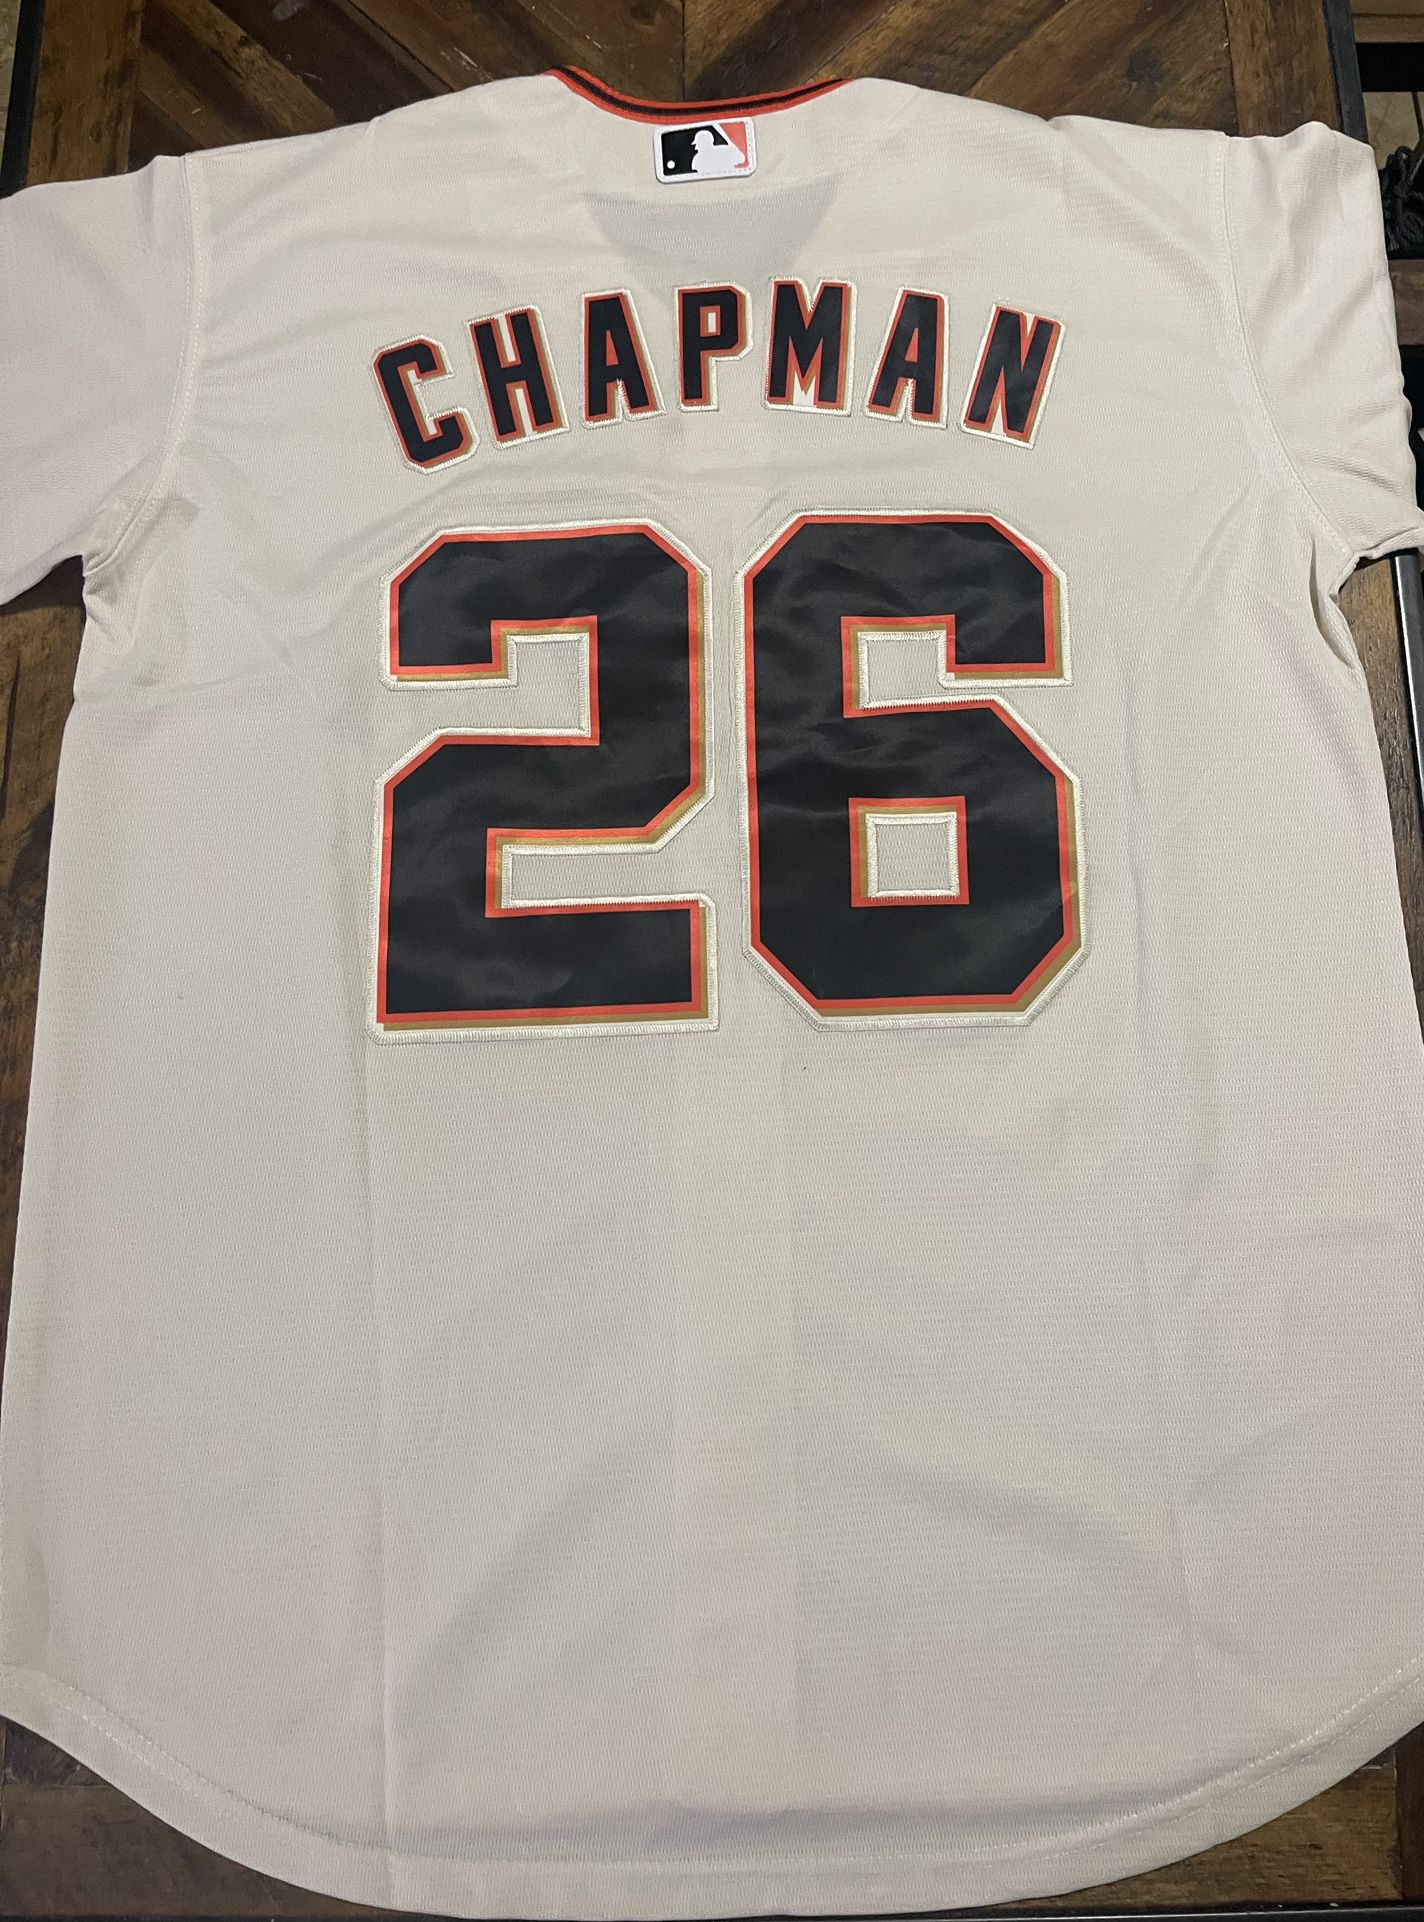 Chapman Men’s Jersey